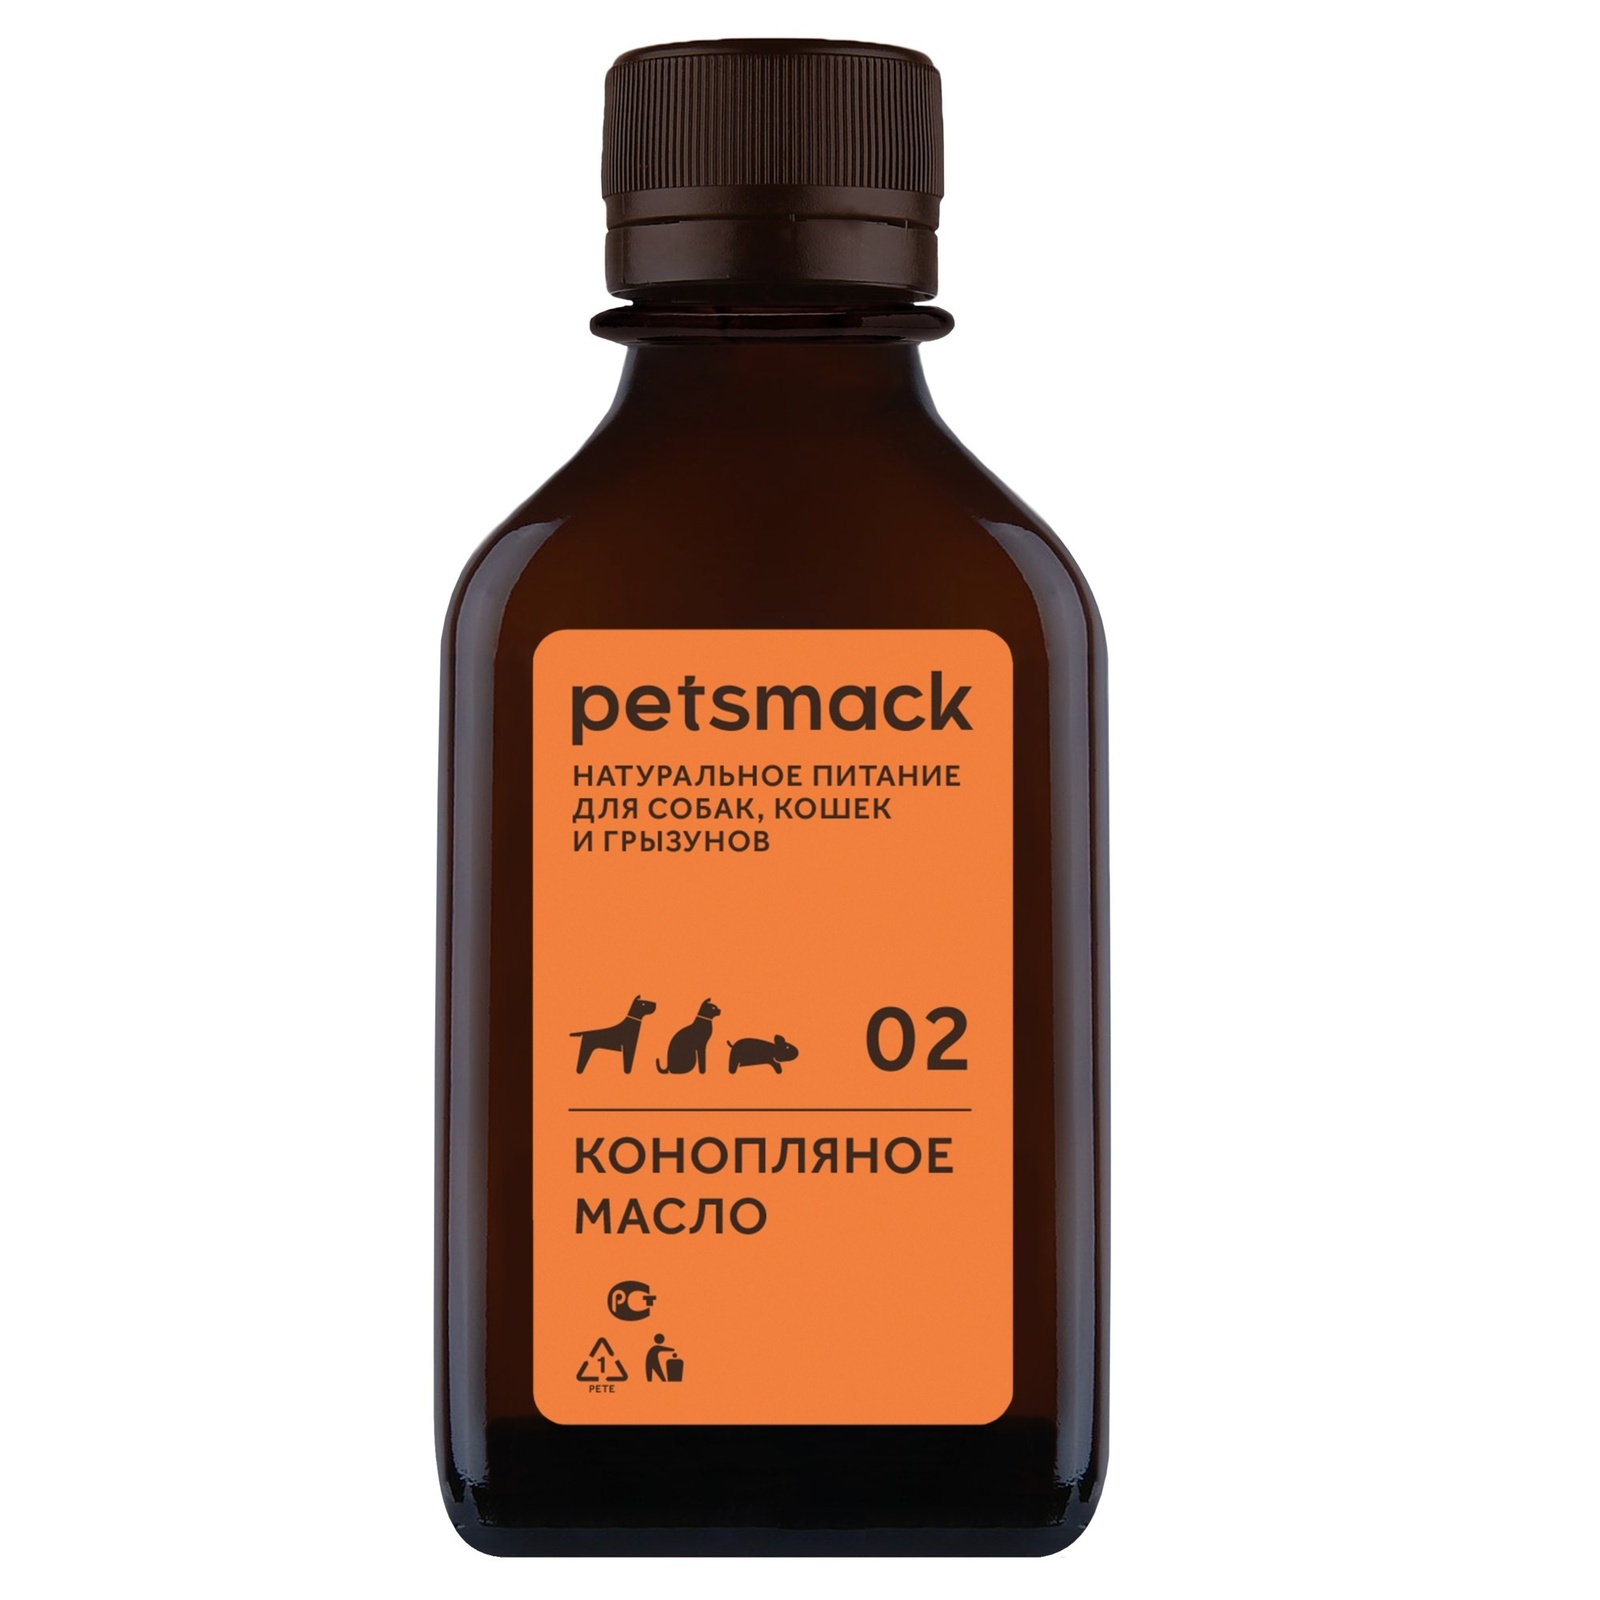 Petsmack лакомства конопляное масло (250 г) Petsmack лакомства конопляное масло (250 г) - фото 1